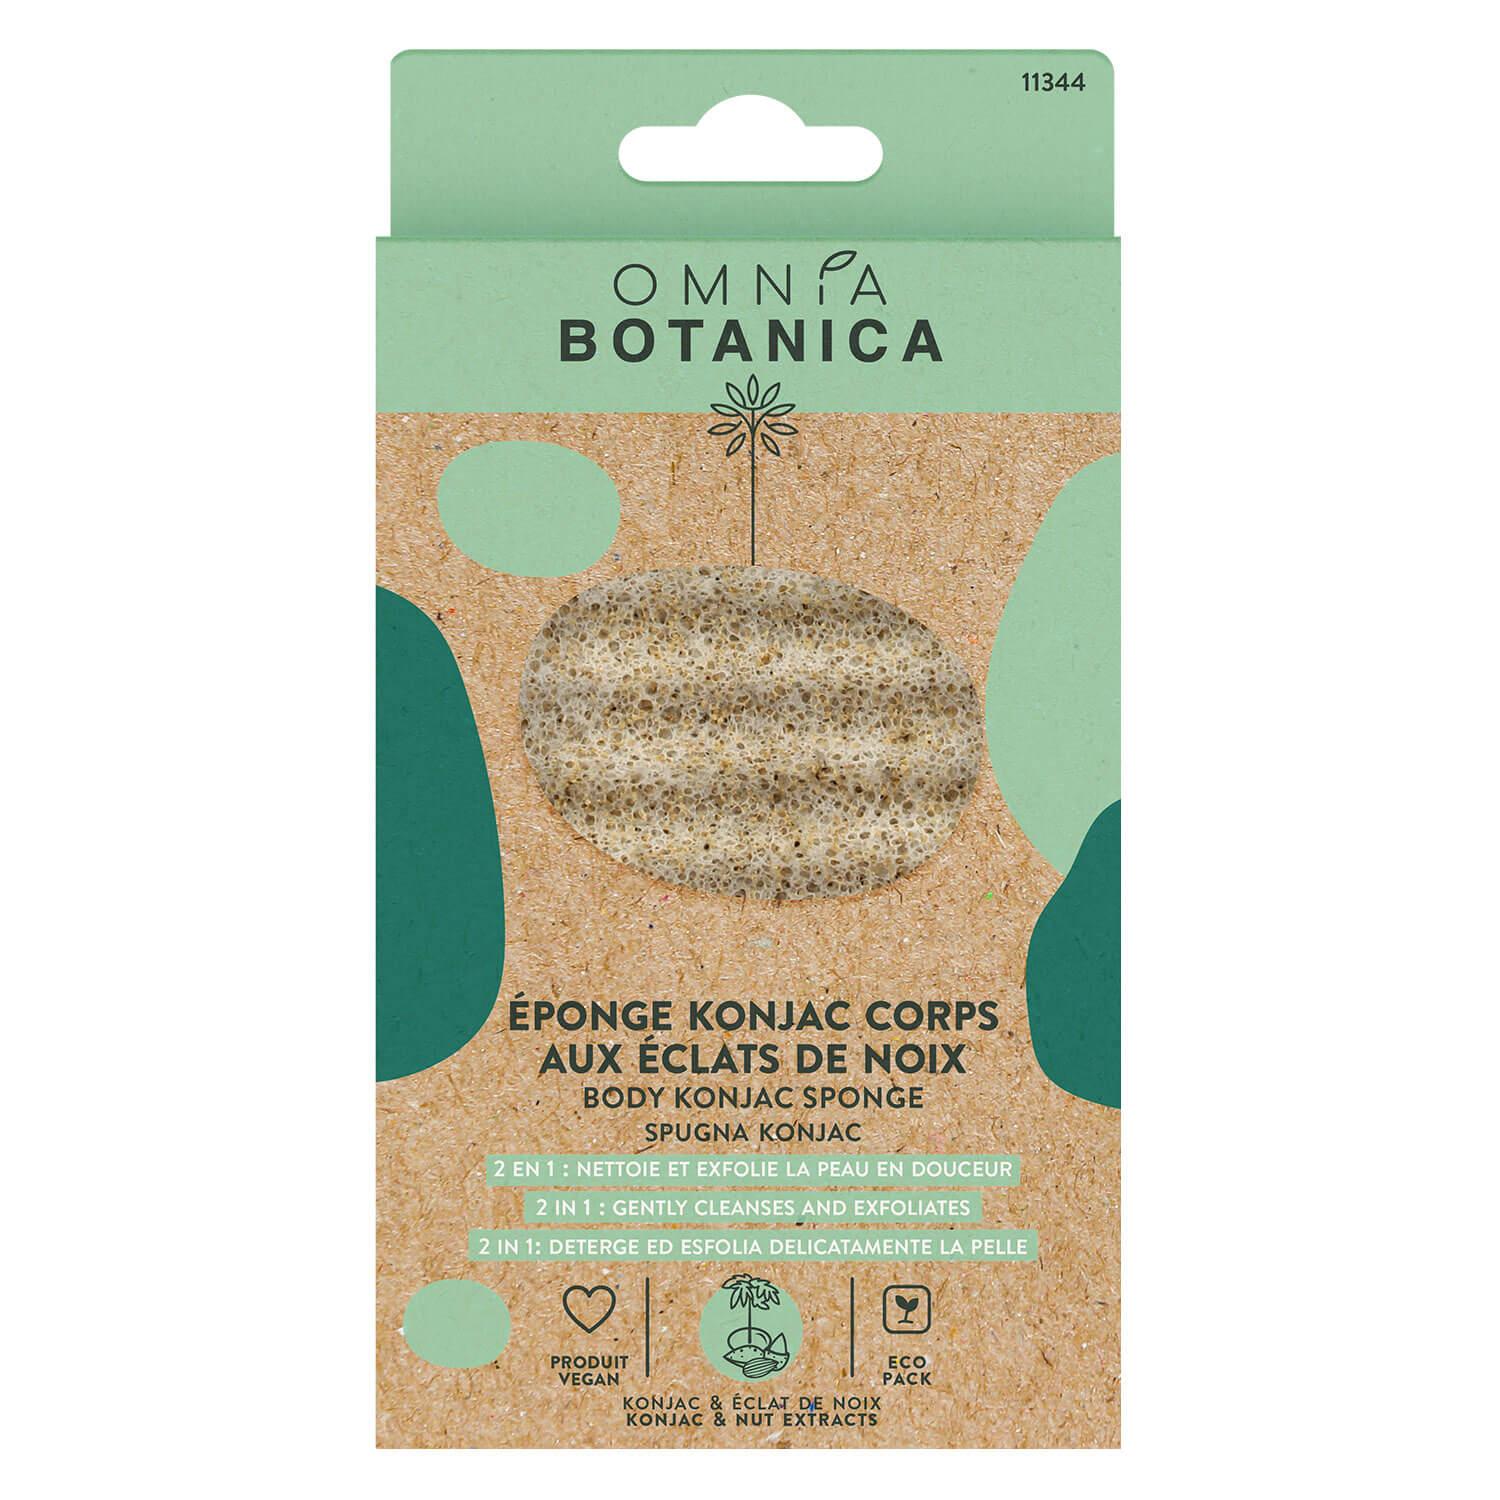 OMNIA BOTANICA - Konjac body sponge with nut extracts